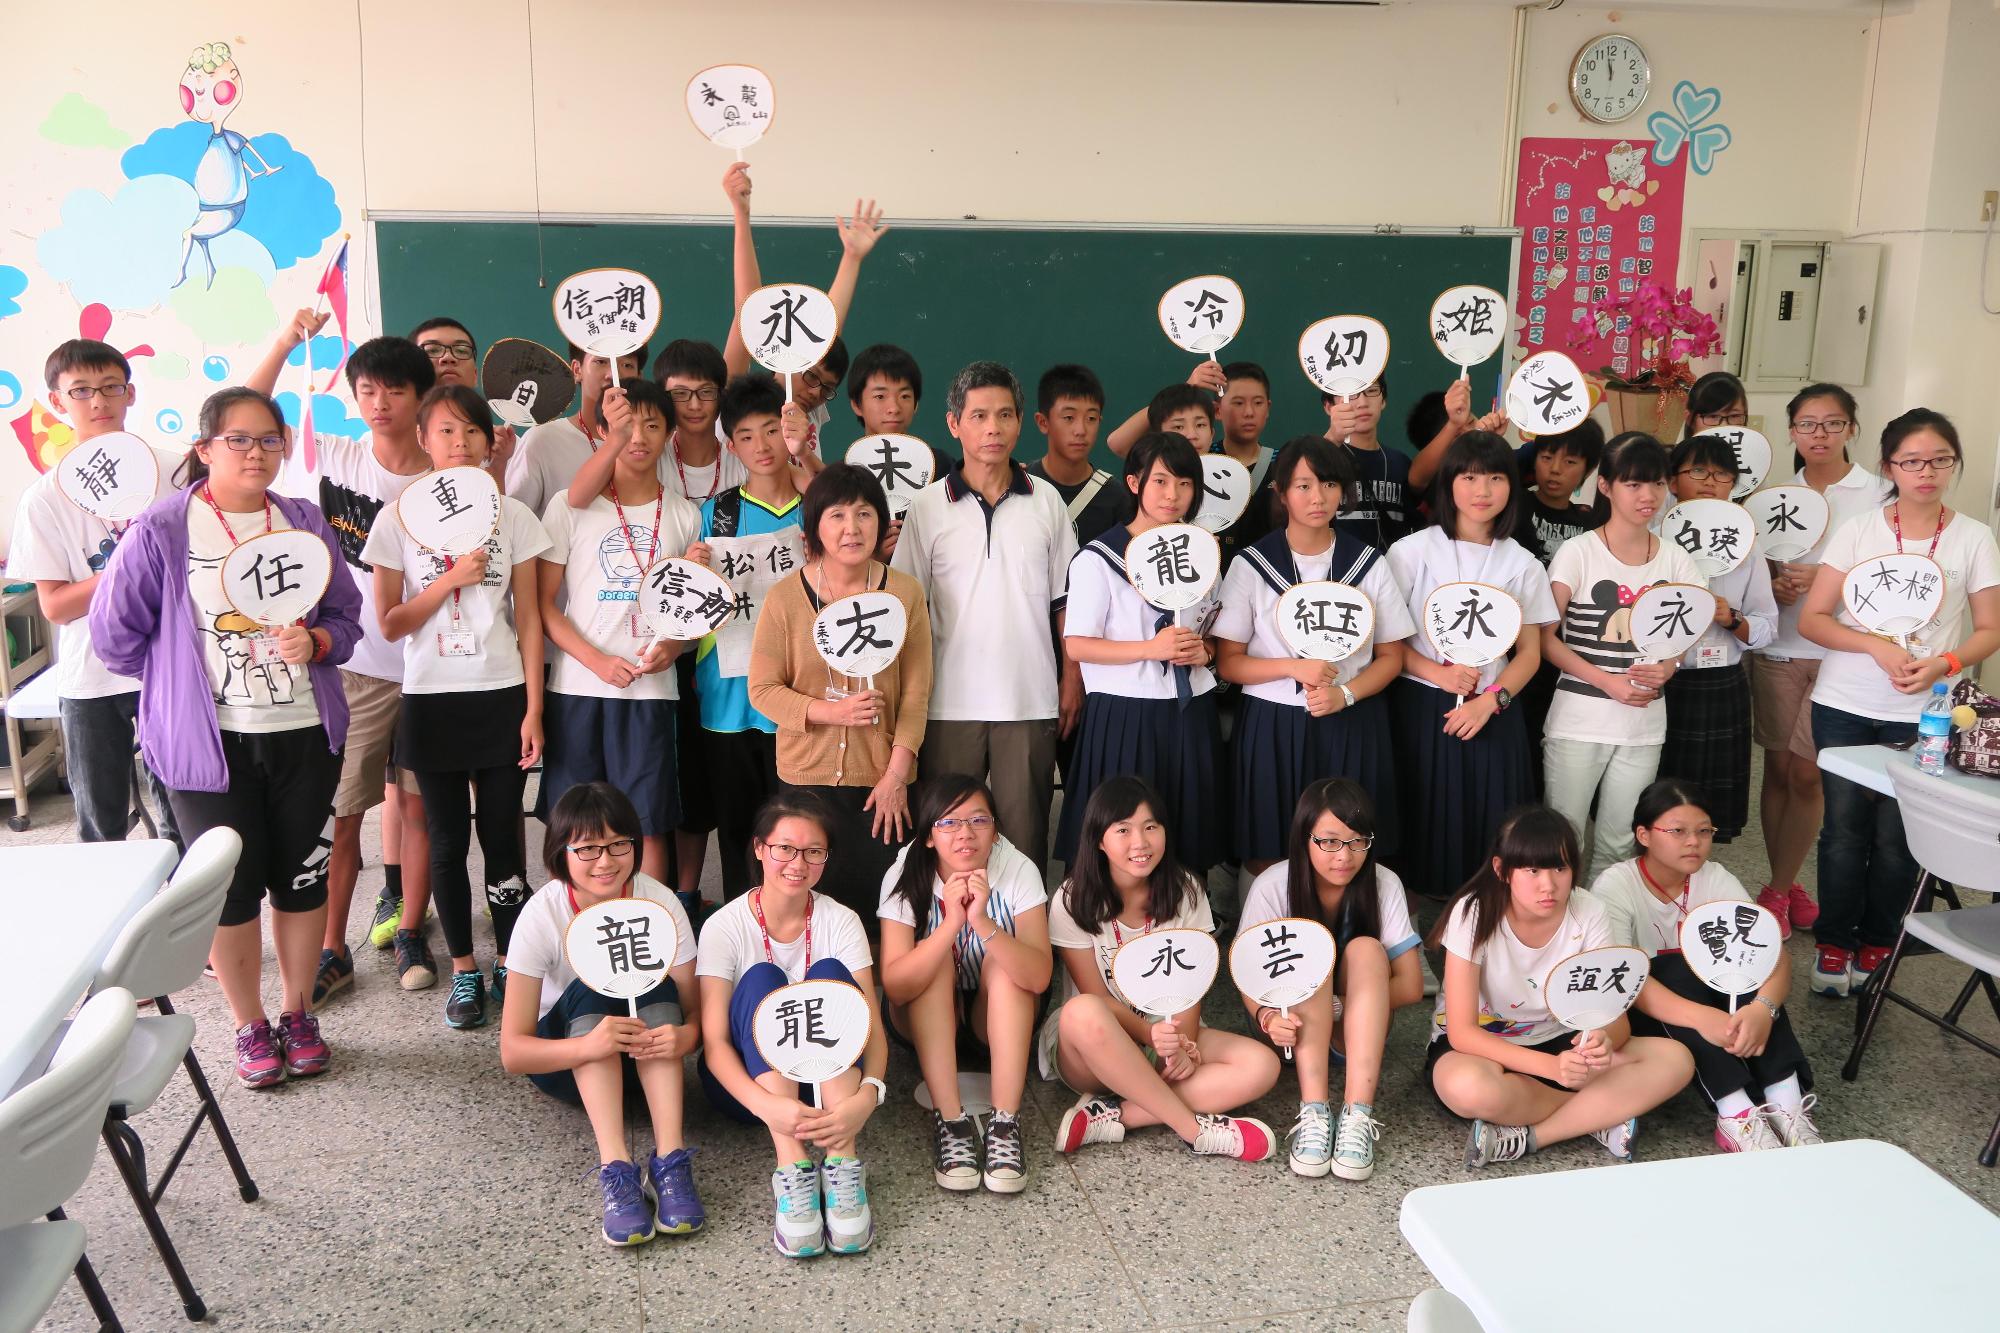 大人数の男女の中学生が教室で記念撮影をしている写真。1人1枚うちわをもち、うちわにはそれぞれ異なる漢字が書かれている。